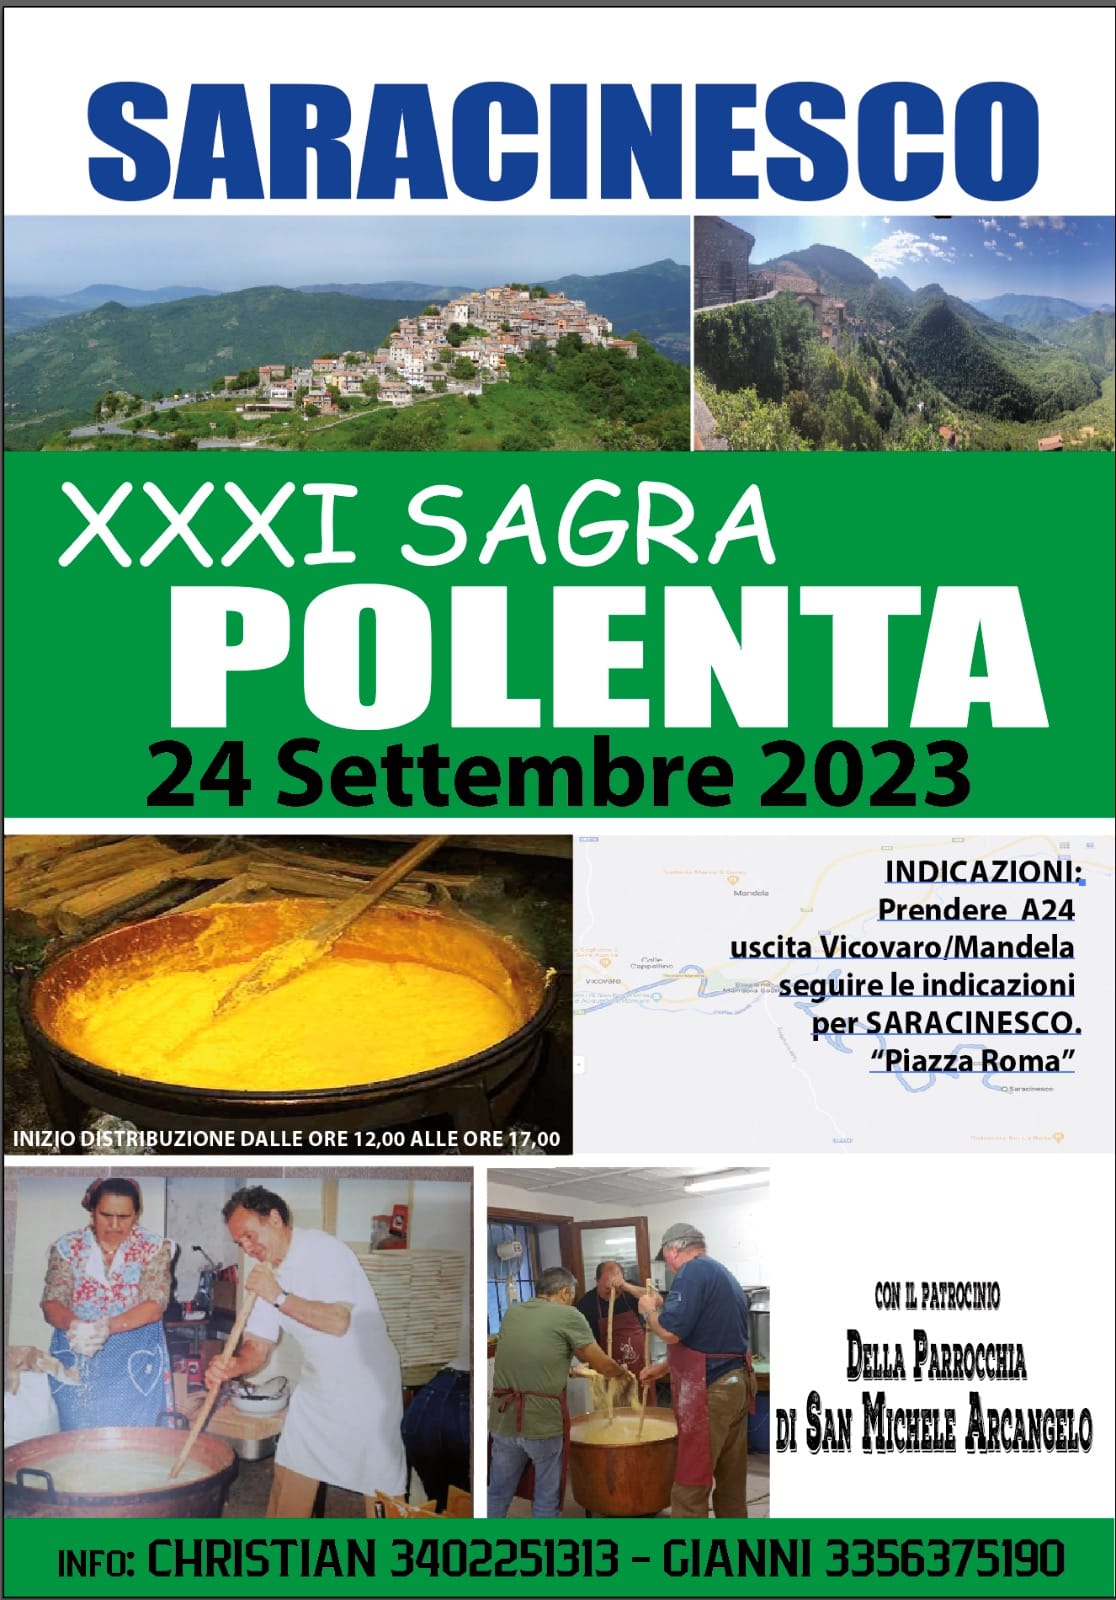 https://www.agenziaeventi.org/immagini_news/3777/saracinesco-il-24-settembre-xxxi-sagra-della-polenta-3777.jpg